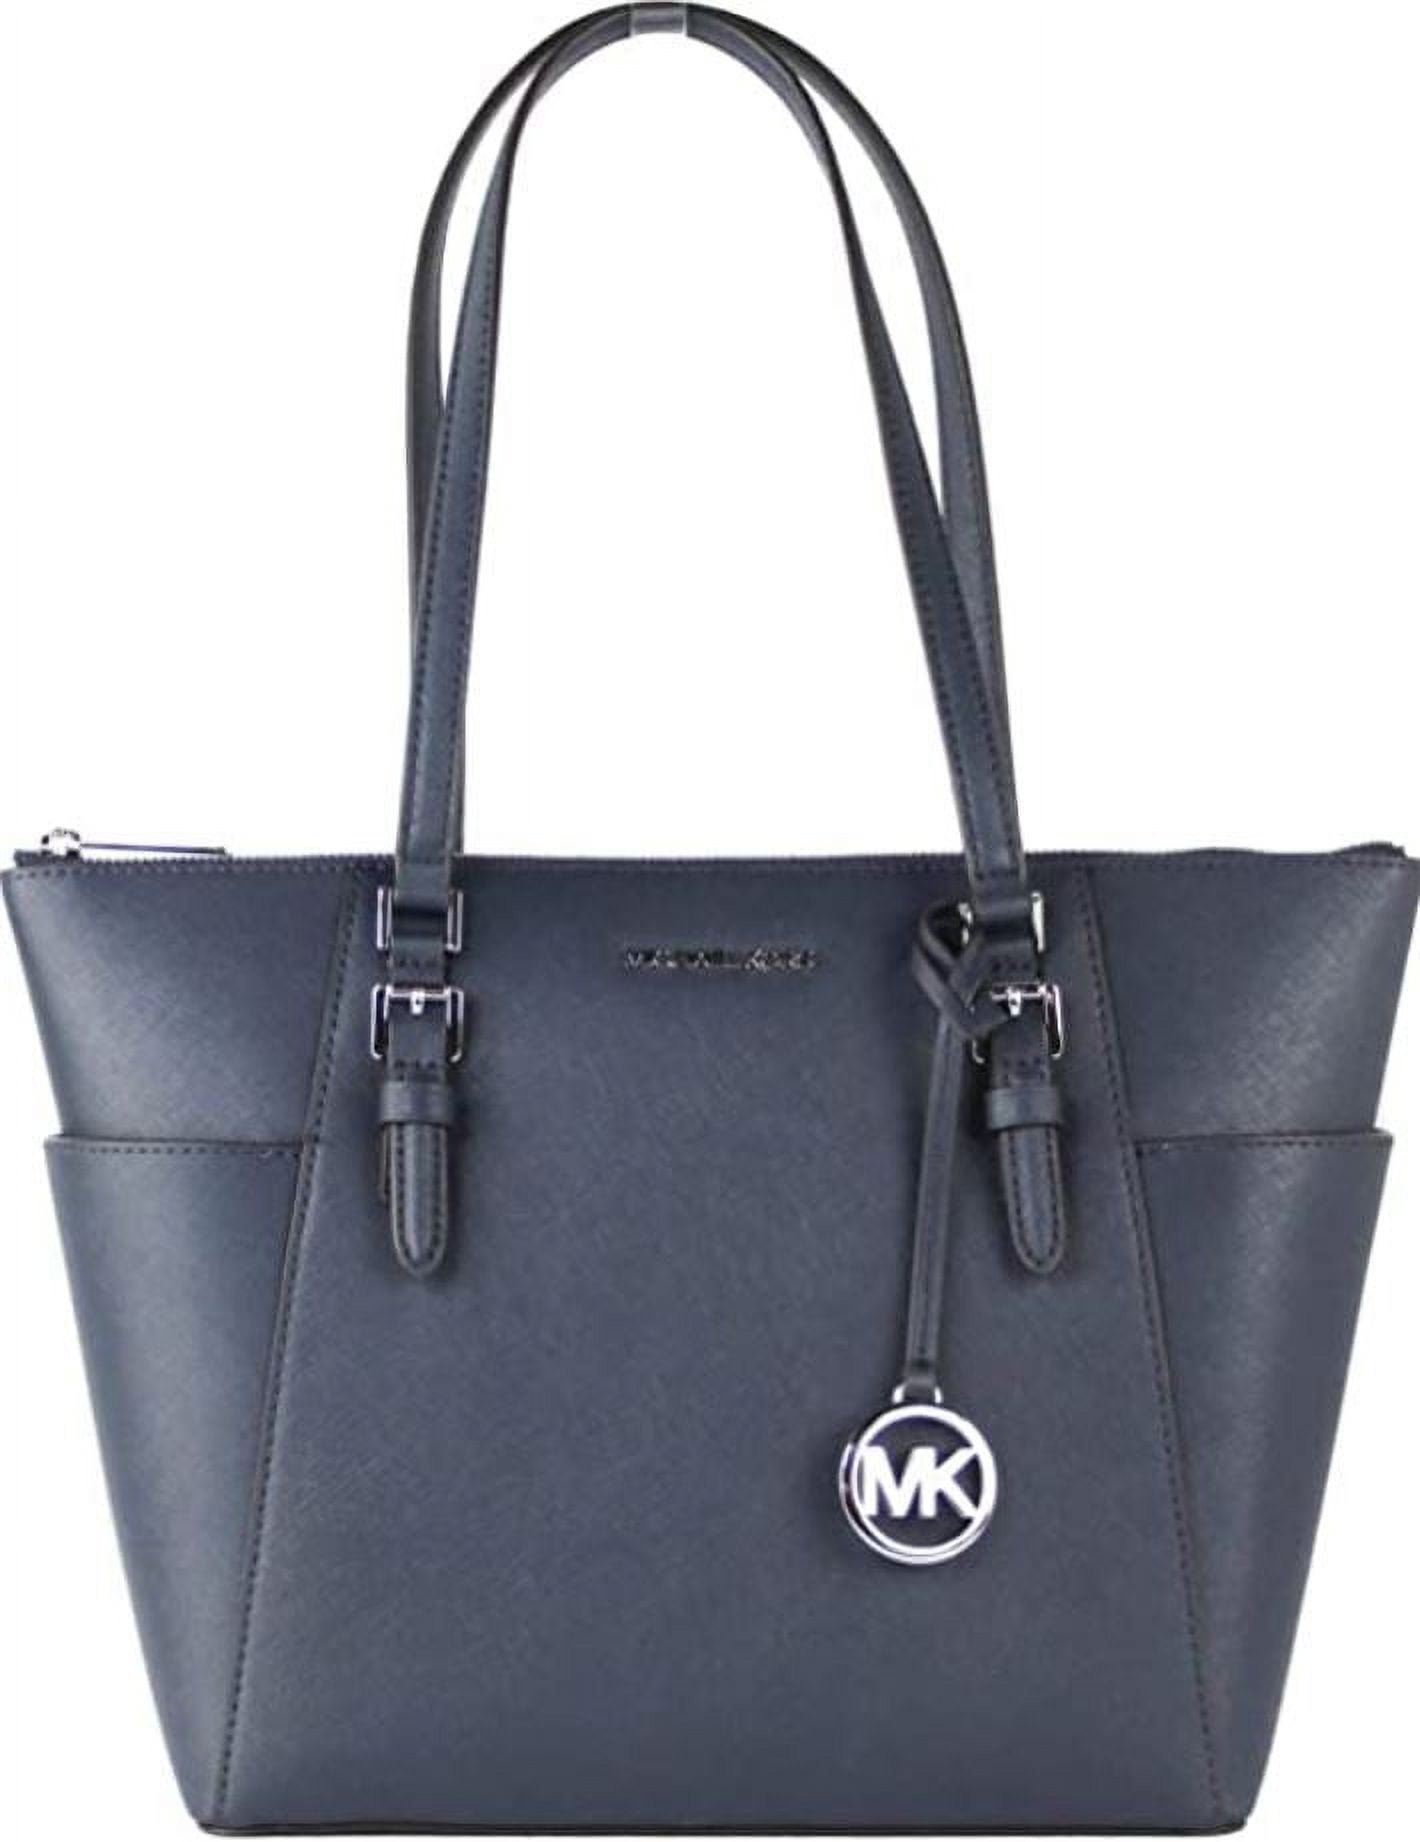 Michael Kors Tote Bag On Sale, Black, Leather, 2019